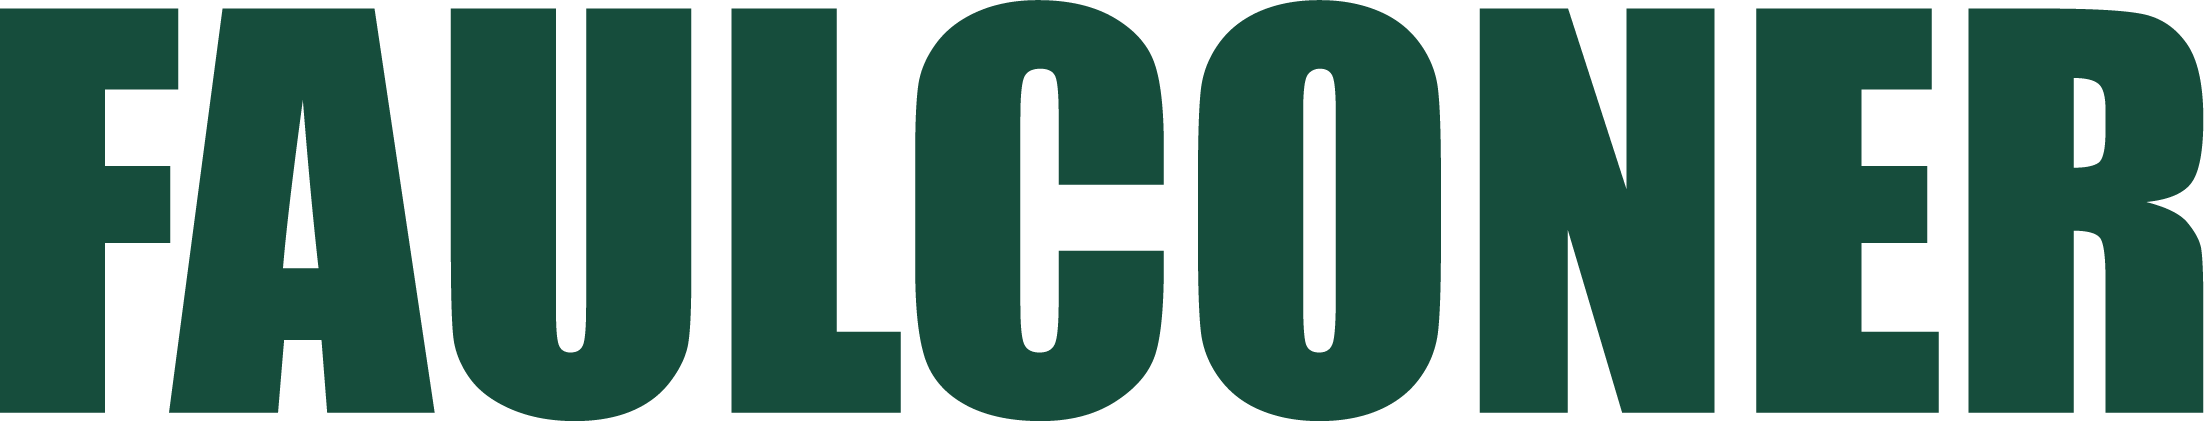 Faulconer Construction Company logo